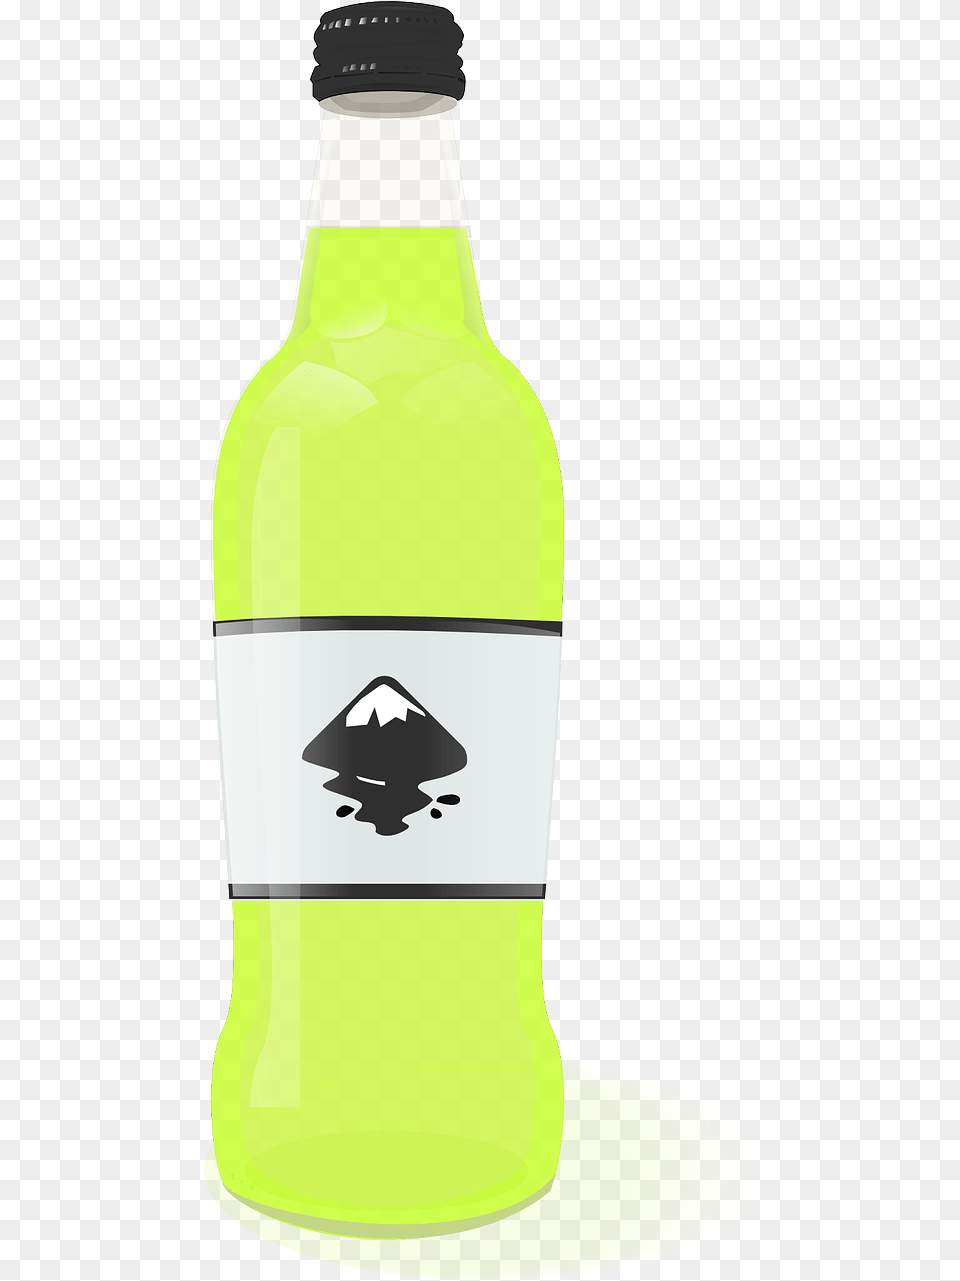 Beverage Drinking Lemonade Photo Inkscape, Alcohol, Beer, Bottle, Beer Bottle Free Png Download